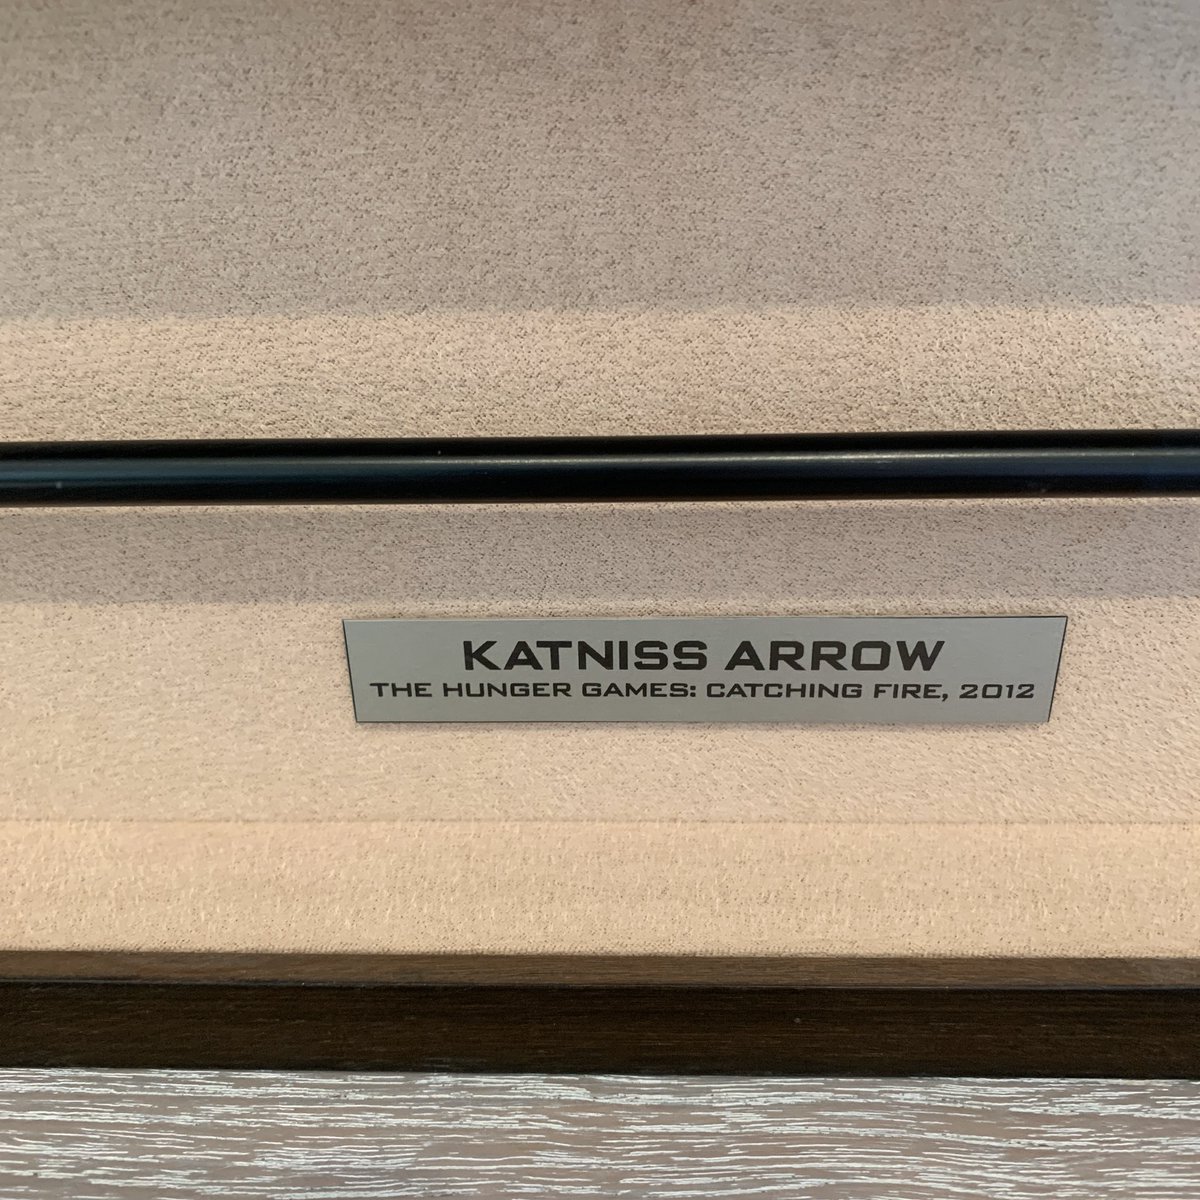 När man har möte i LA på kontoret som har Katniss pil i sin ägo. 😎 #HungerGames #PictureStart 